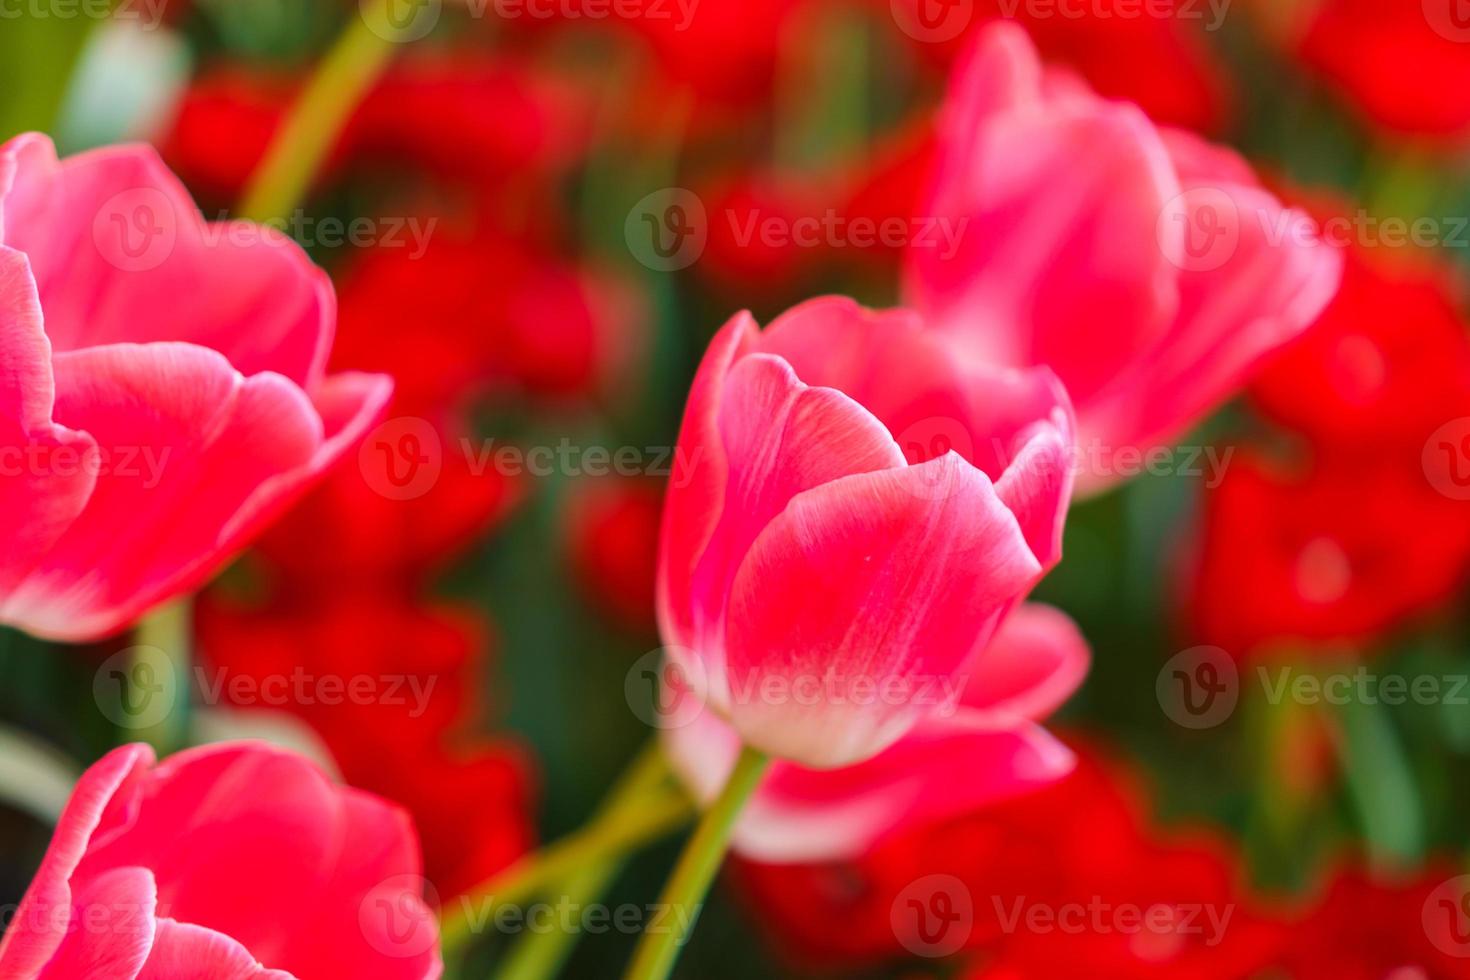 hermosos tulipanes rojos, fondo de flores foto